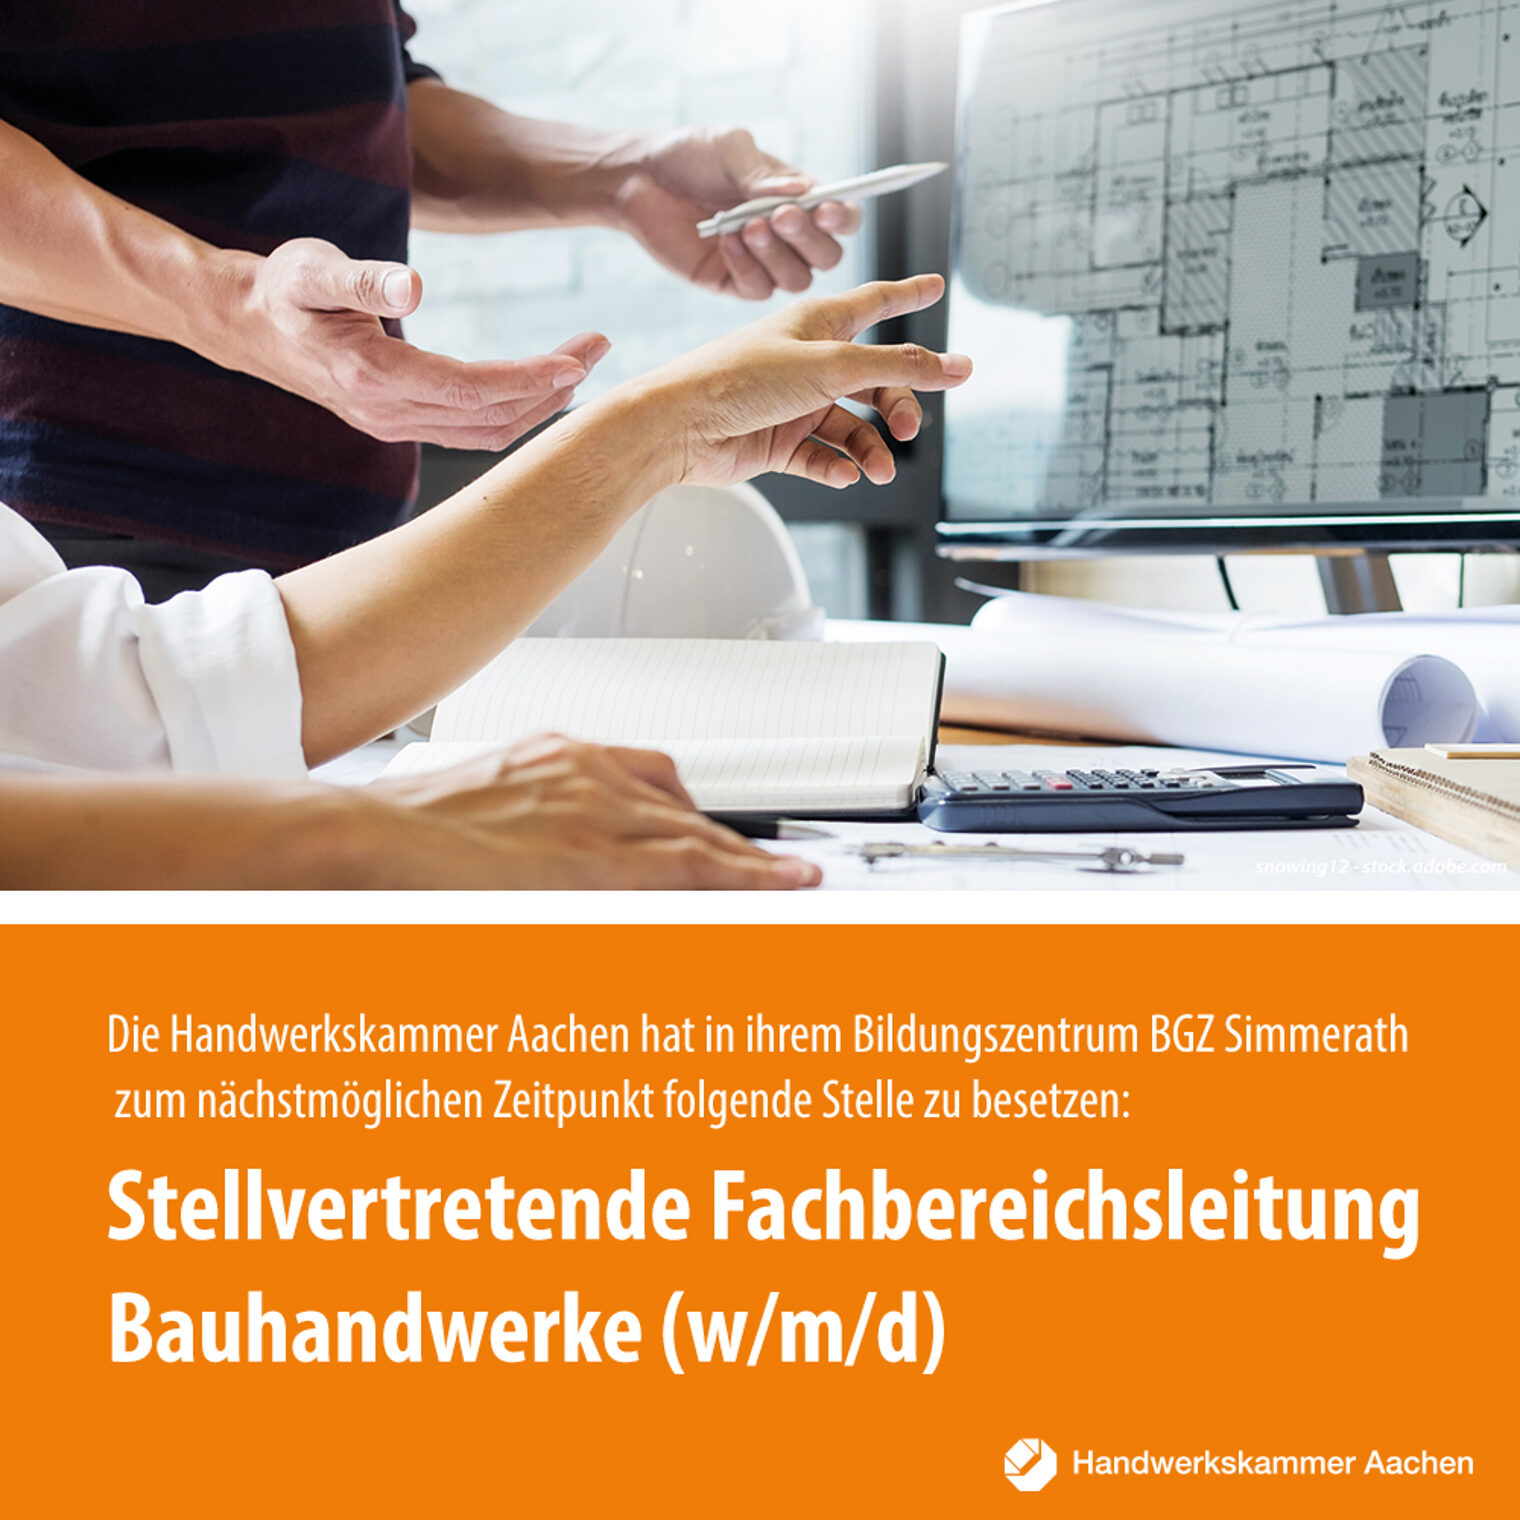 Stellvertretende Fachbereichsleitung Bauhandwerke und Ausbilder in Meistervorbereitungslehrgängen (w/m/d) 